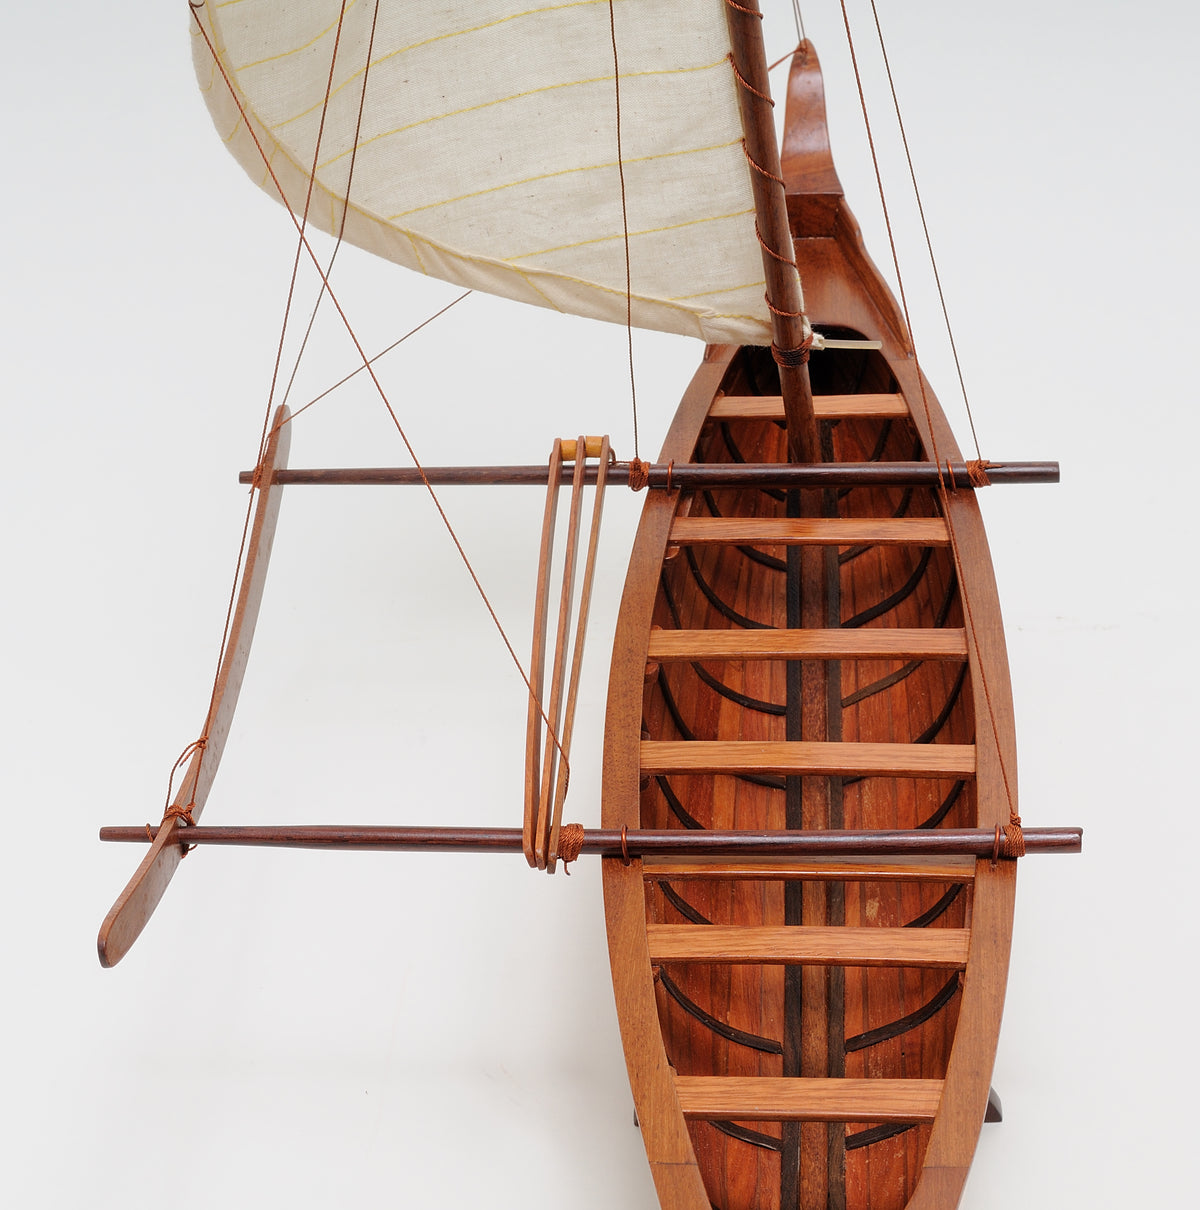 Hawaiian Outrigger Model Canoe - Adley & Company Inc. 